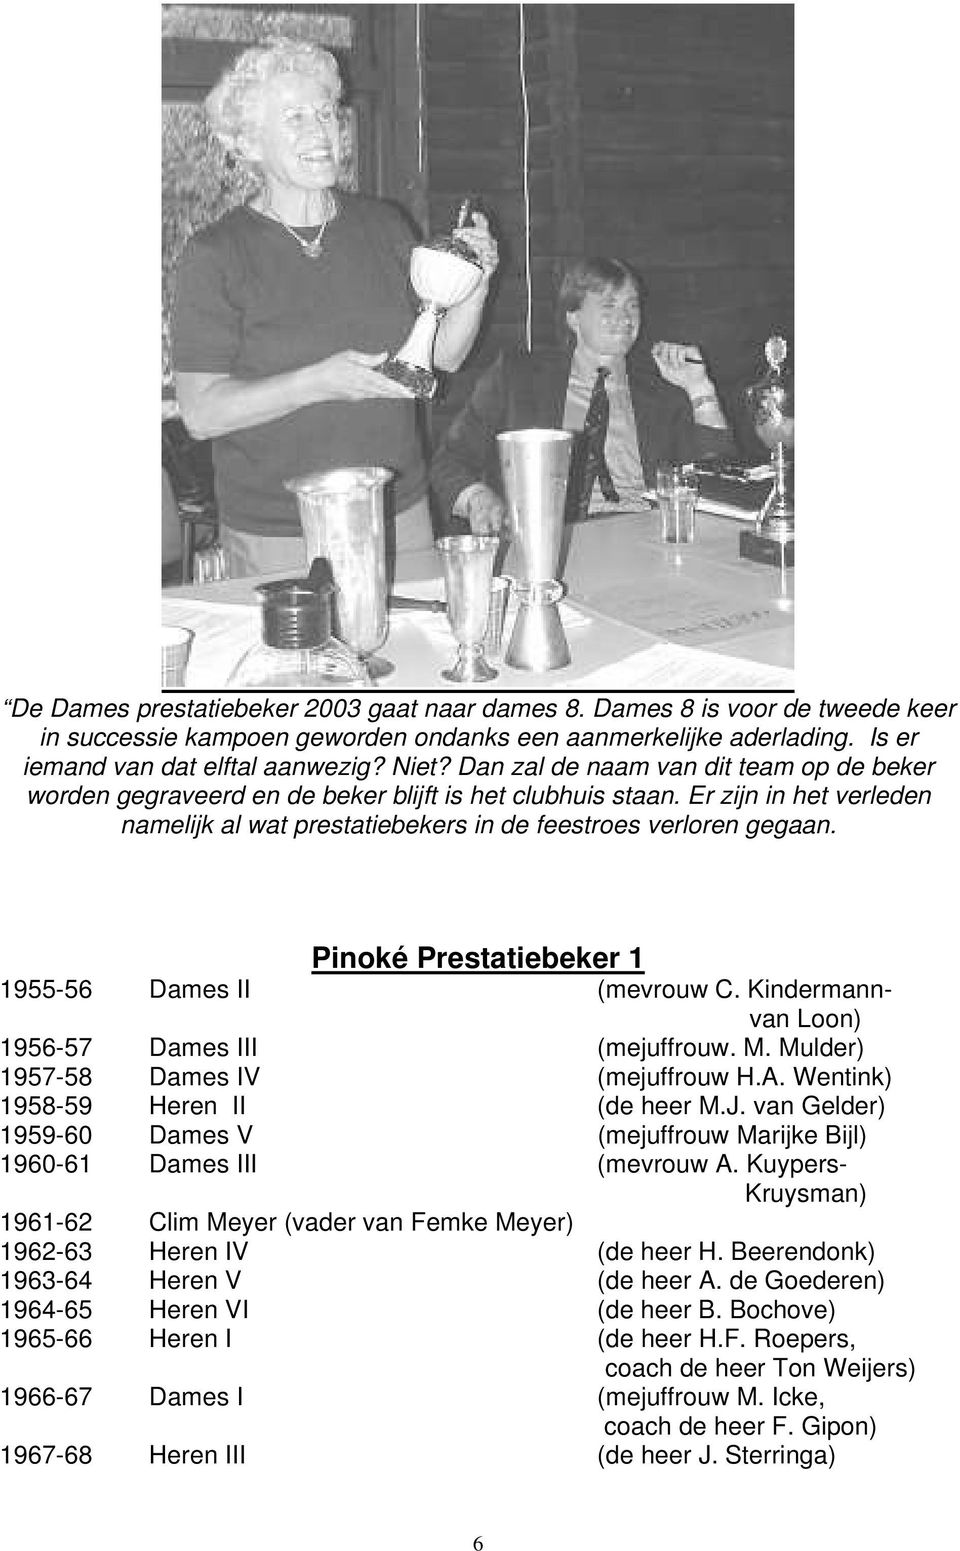 Pinoké Prestatiebeker 1 1955-56 Dames II (mevrouw C. Kindermannvan Loon) 1956-57 Dames III (mejuffrouw. M. Mulder) 1957-58 Dames IV (mejuffrouw H.A. Wentink) 1958-59 Heren II (de heer M.J.